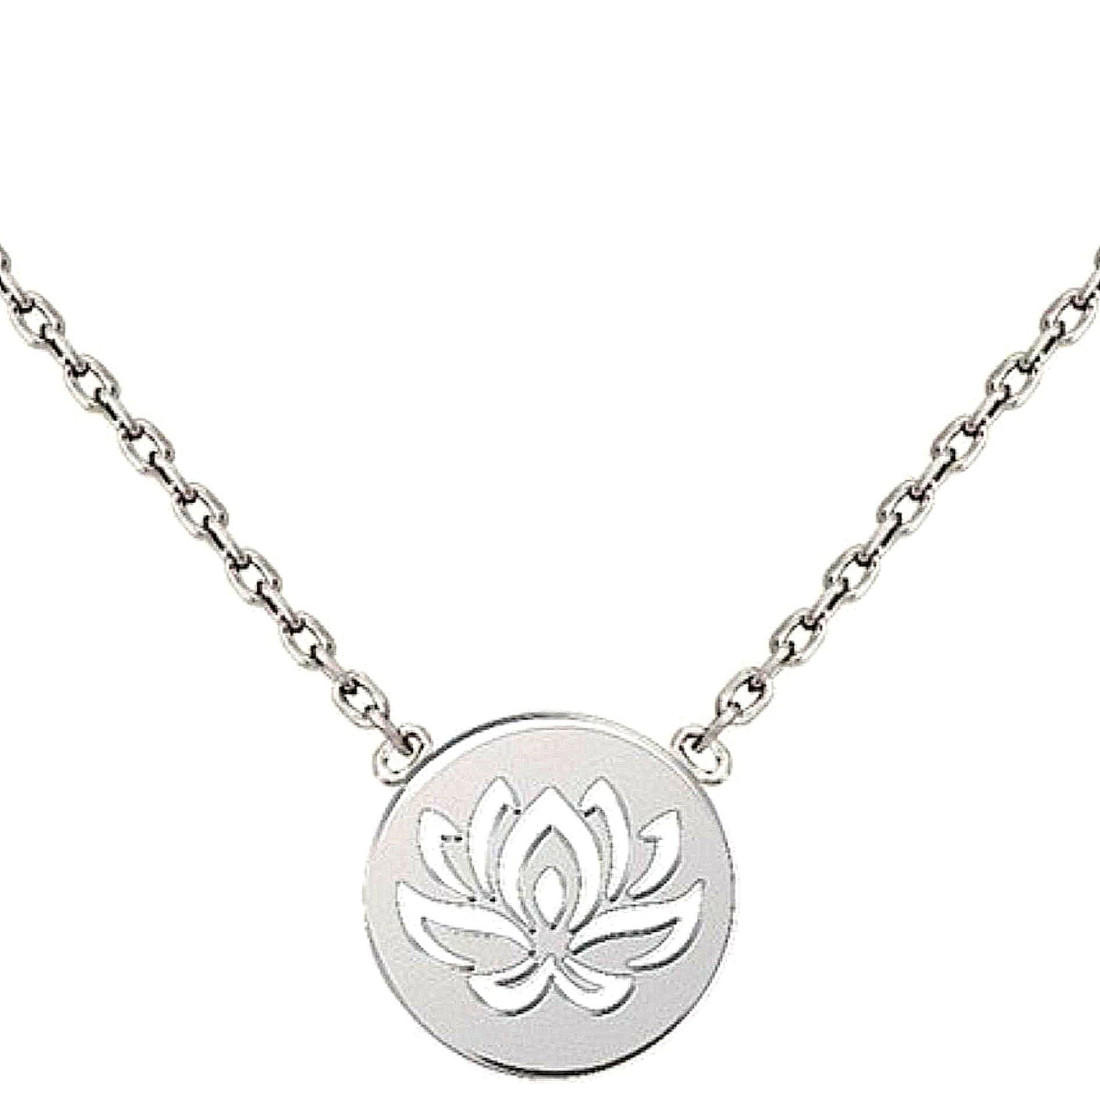 Collier avec breloque médaille fleur de lotus en argent - 42cm